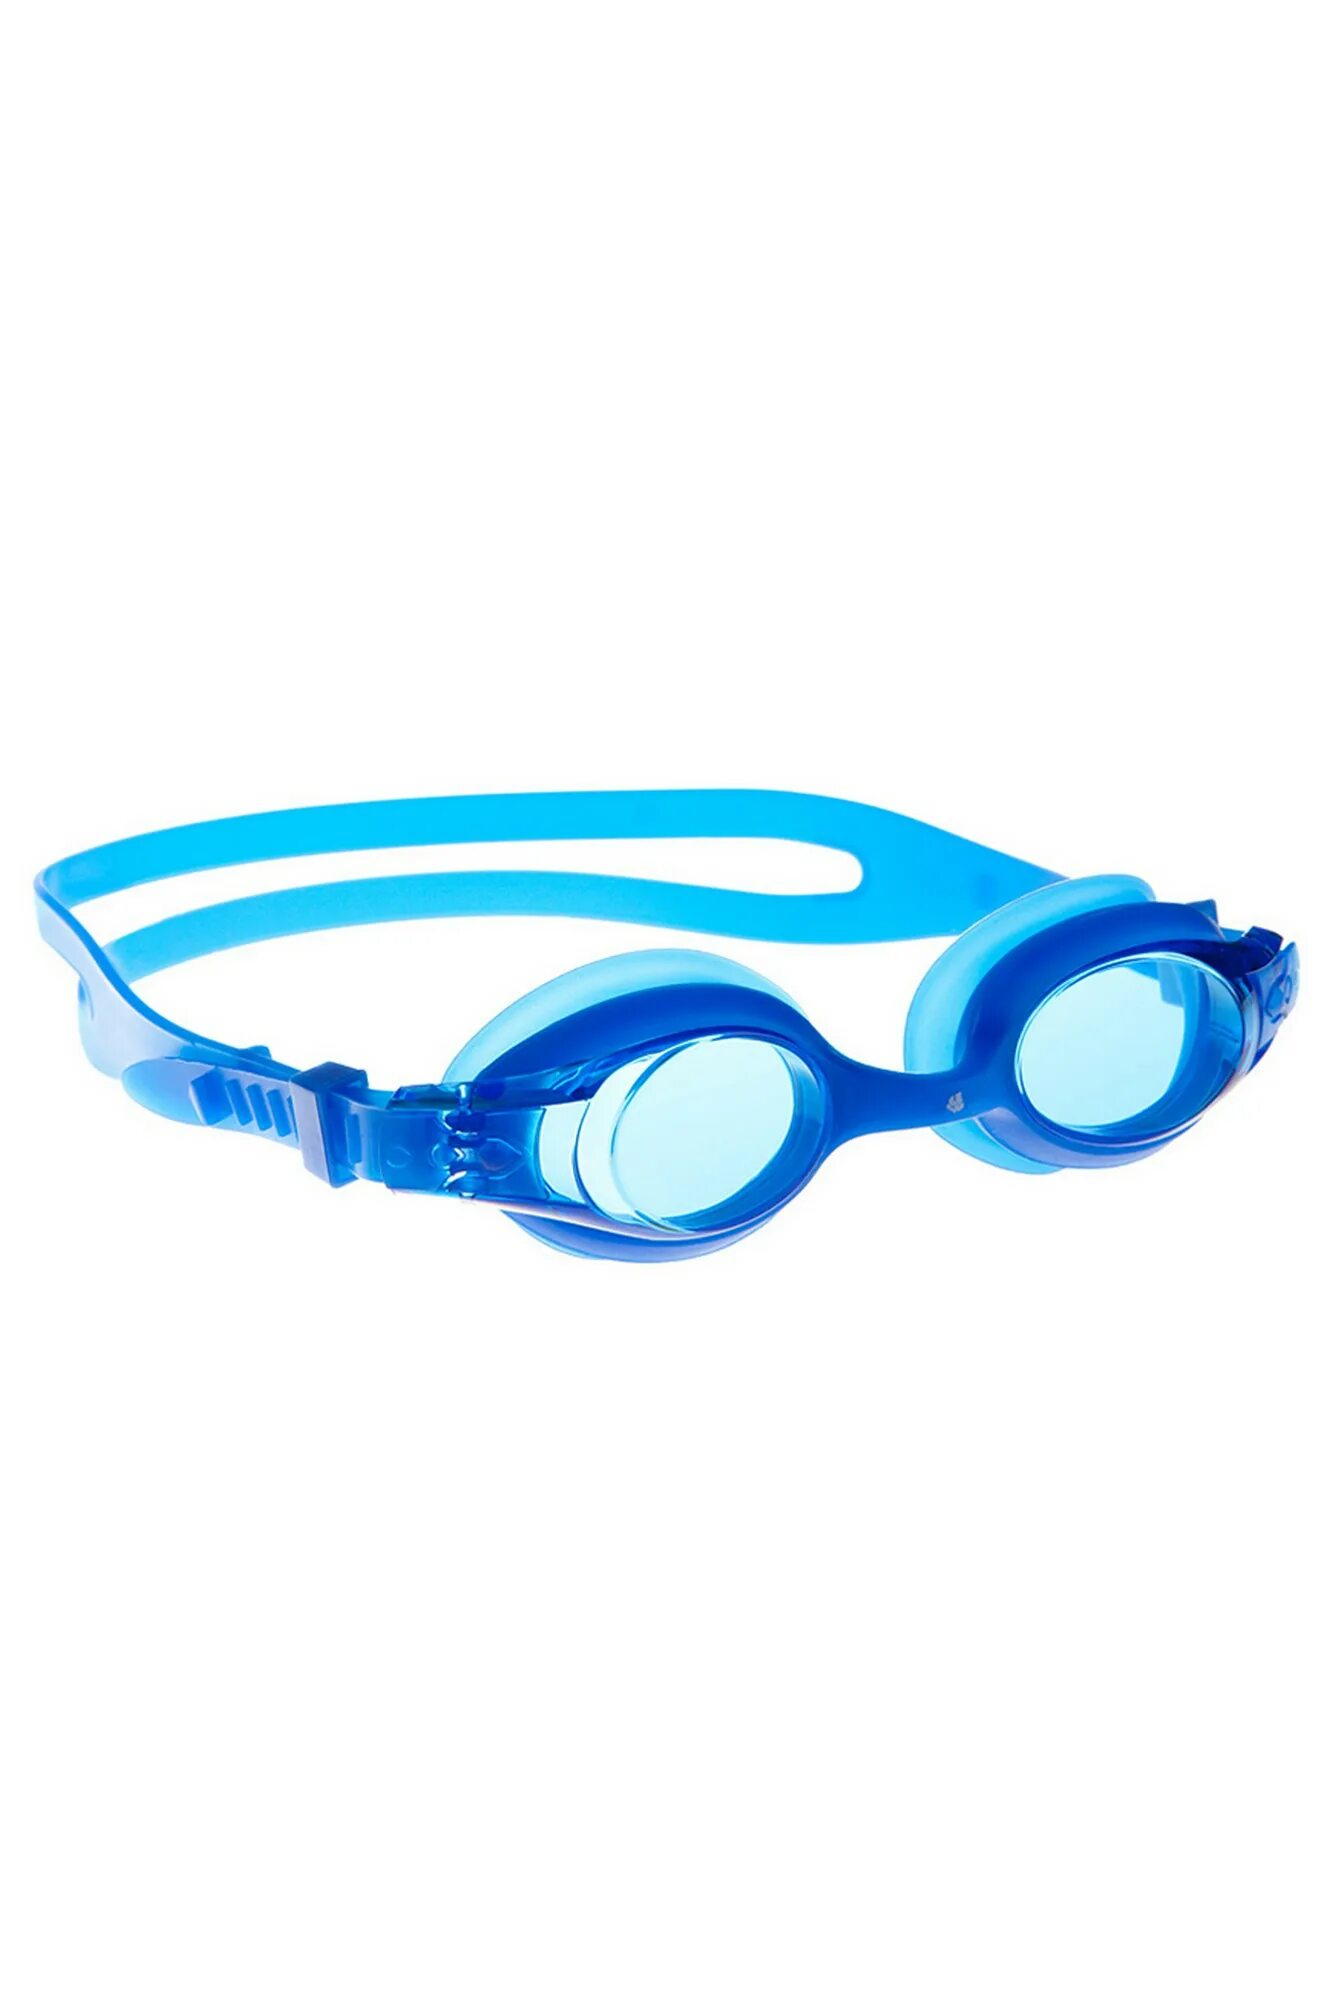 Очки для плавания Mad Wave Autosplash Junior. Юниорские очки MADWAVE autosplashh. Очки Мэд Вэйв для плавания. Очки для плавания юниорские Junior Autosplash.